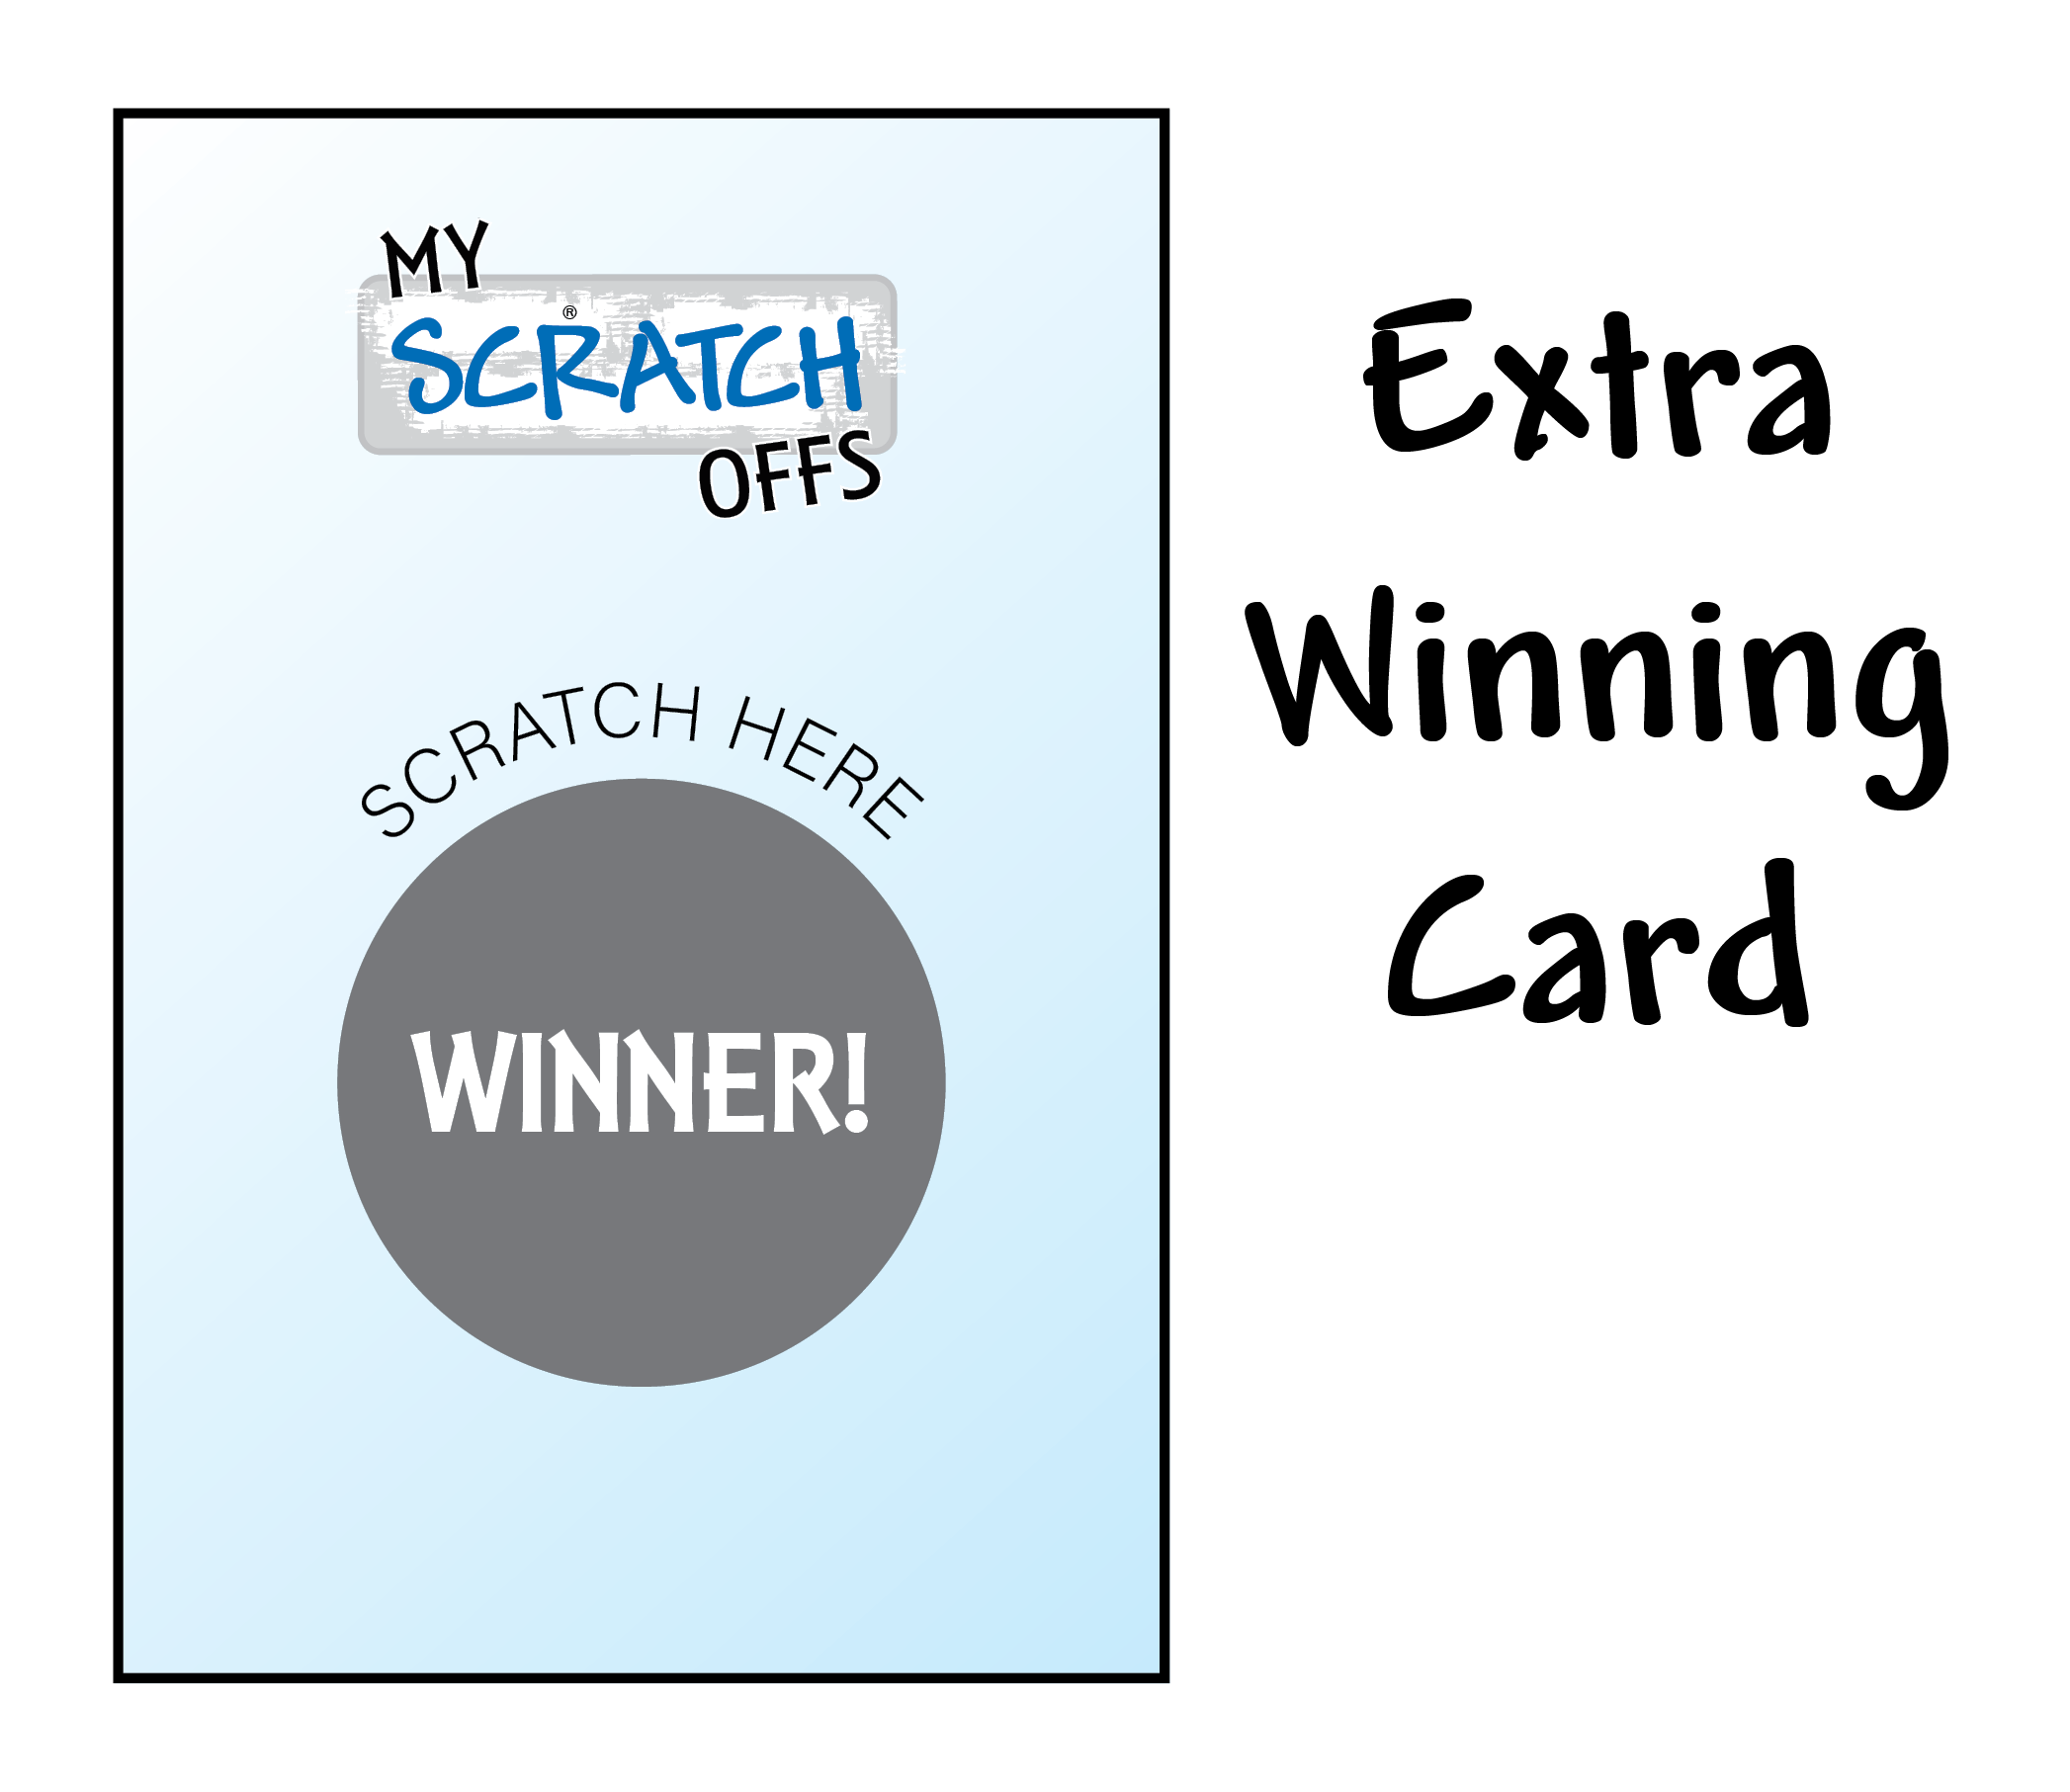 Extra Winning Card - Thanksgiving - My Scratch Offs